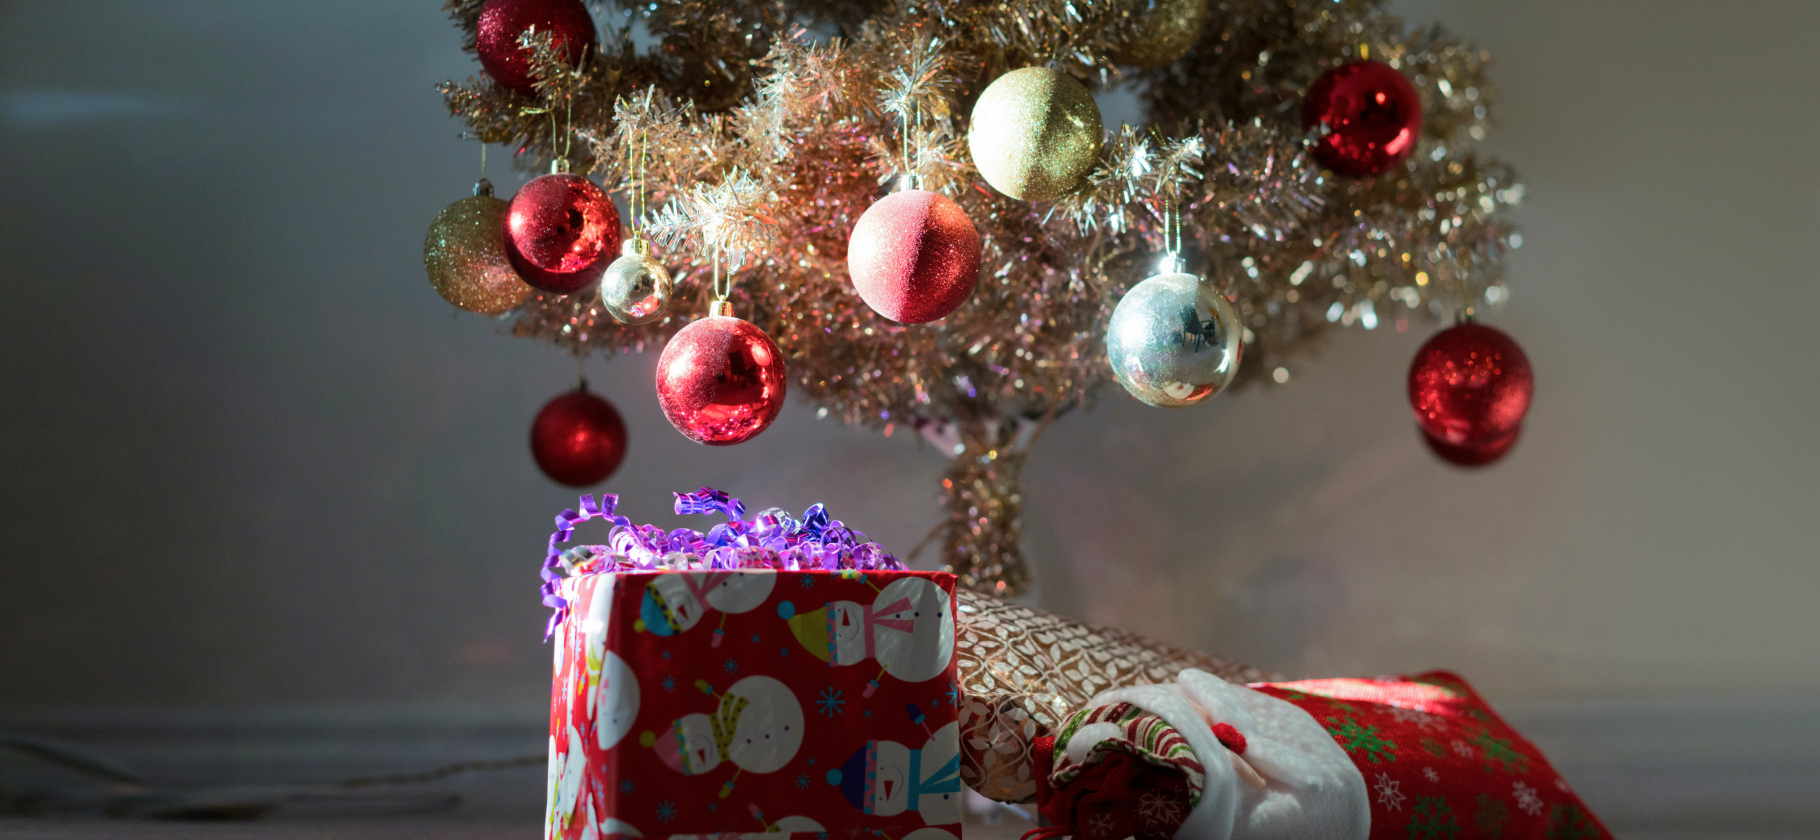 «Глаза мерцали, как новогодние игрушки»: 20 подарков, которые приятно найти под елкой